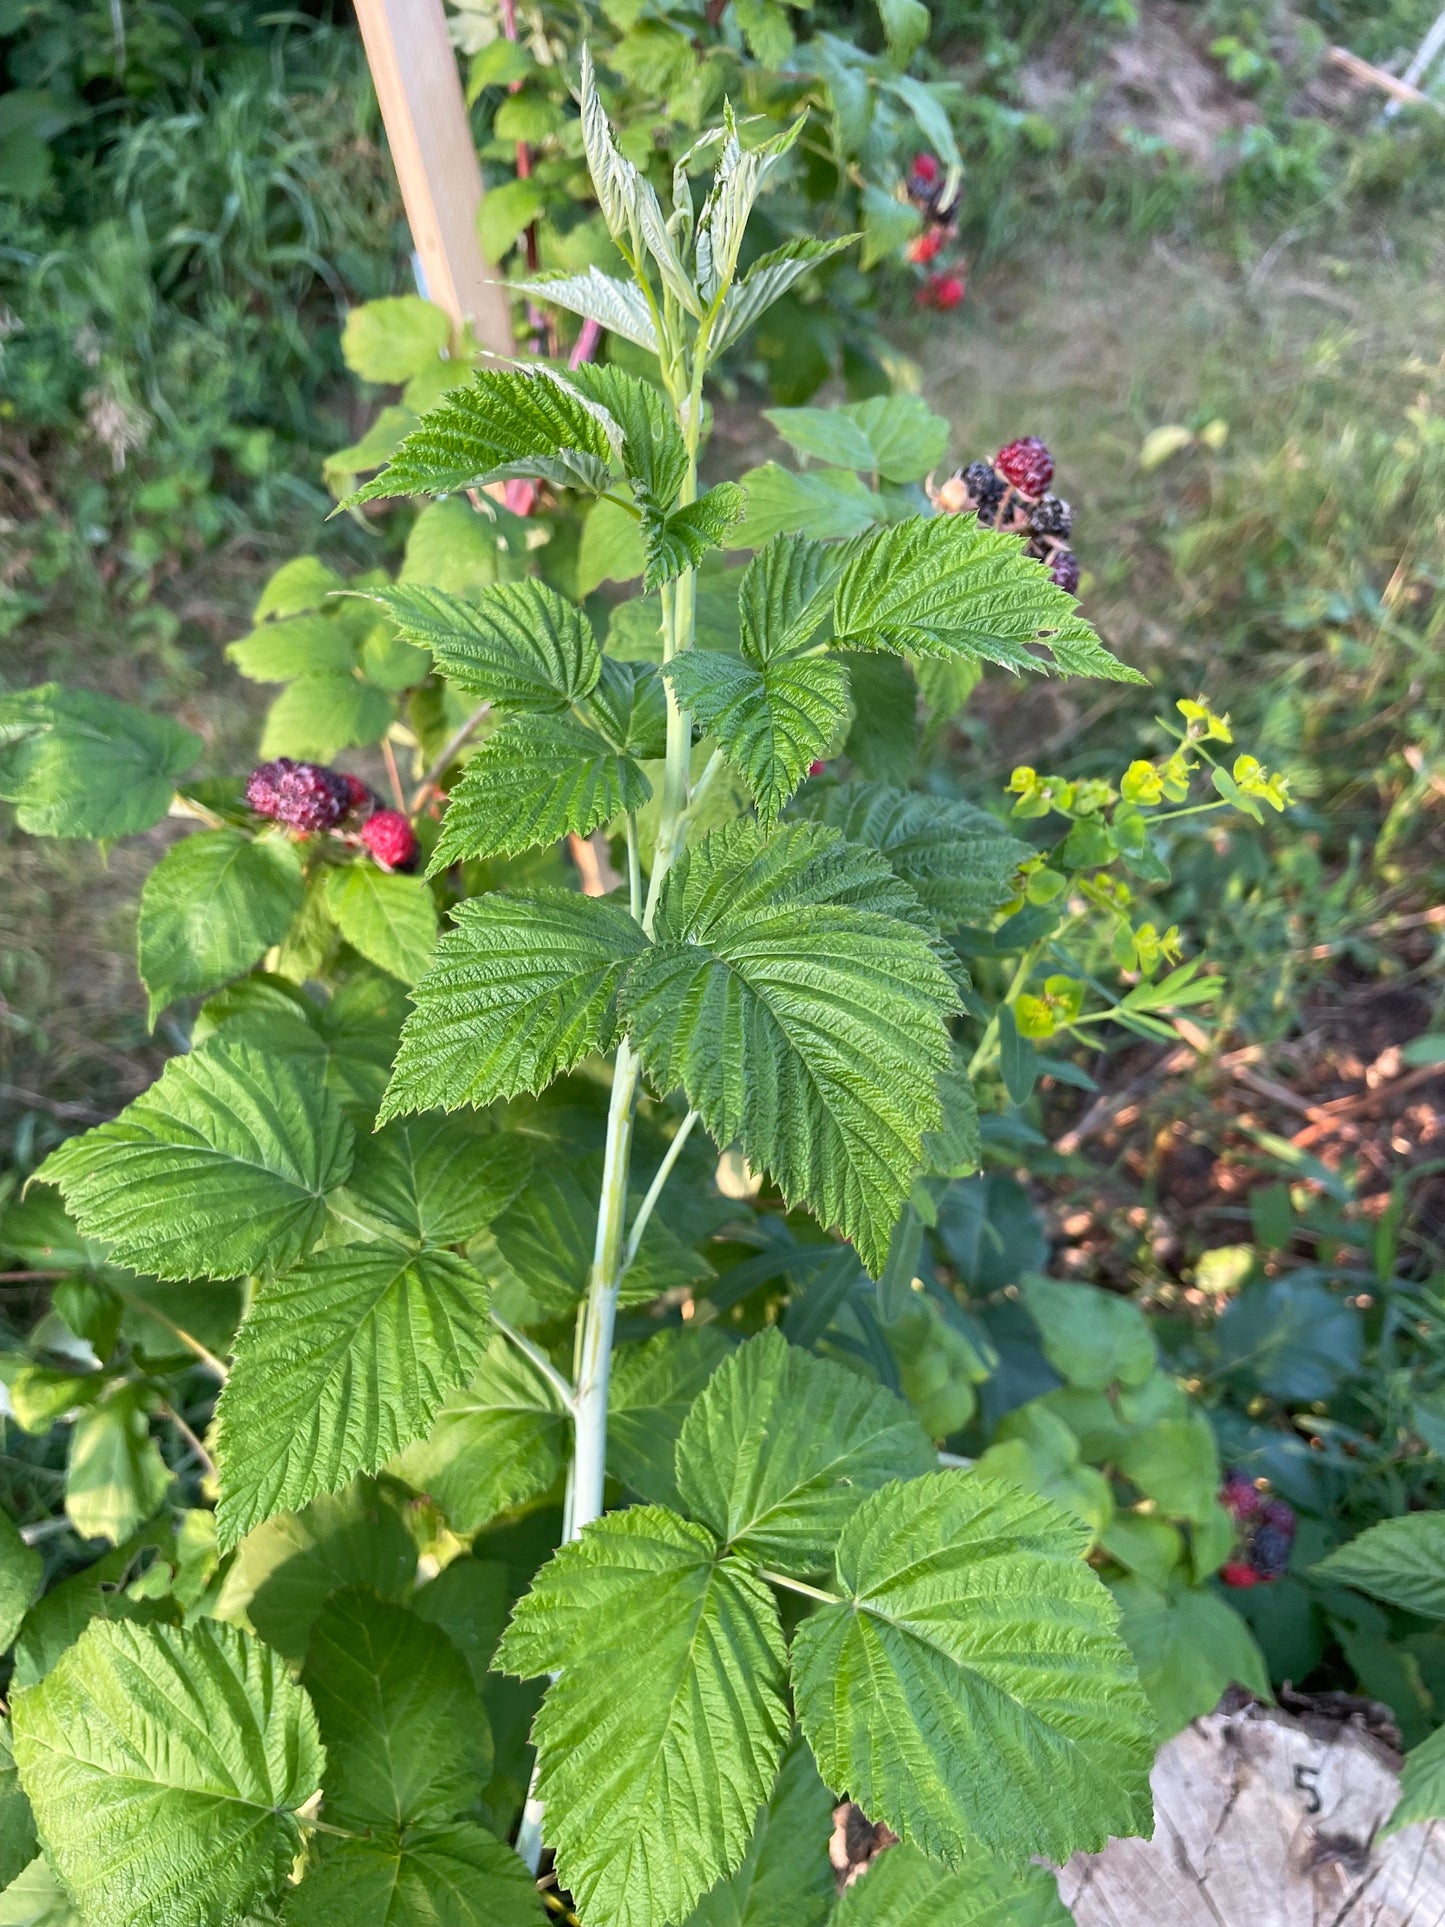 Semillas de frambuesa negra joya (Rubus occidentalis 'Jewel') - Semillas perennes - Zona de rusticidad 4-5 - Más de 50 semillas